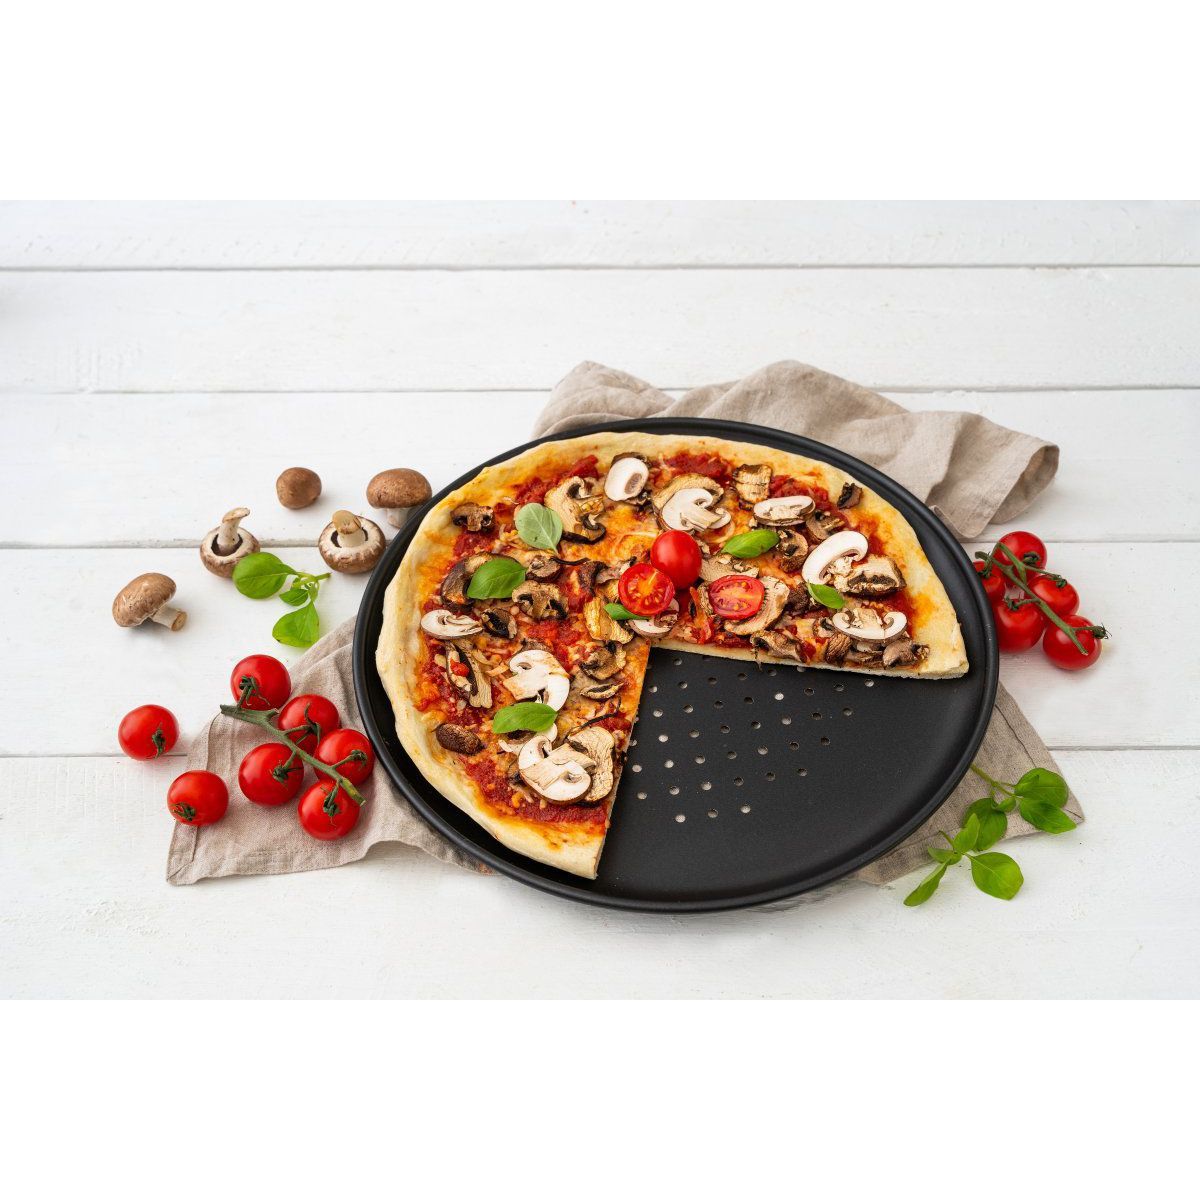 Zenker - Plaque à pizza rectangulaire perforée extensible 37 à 52